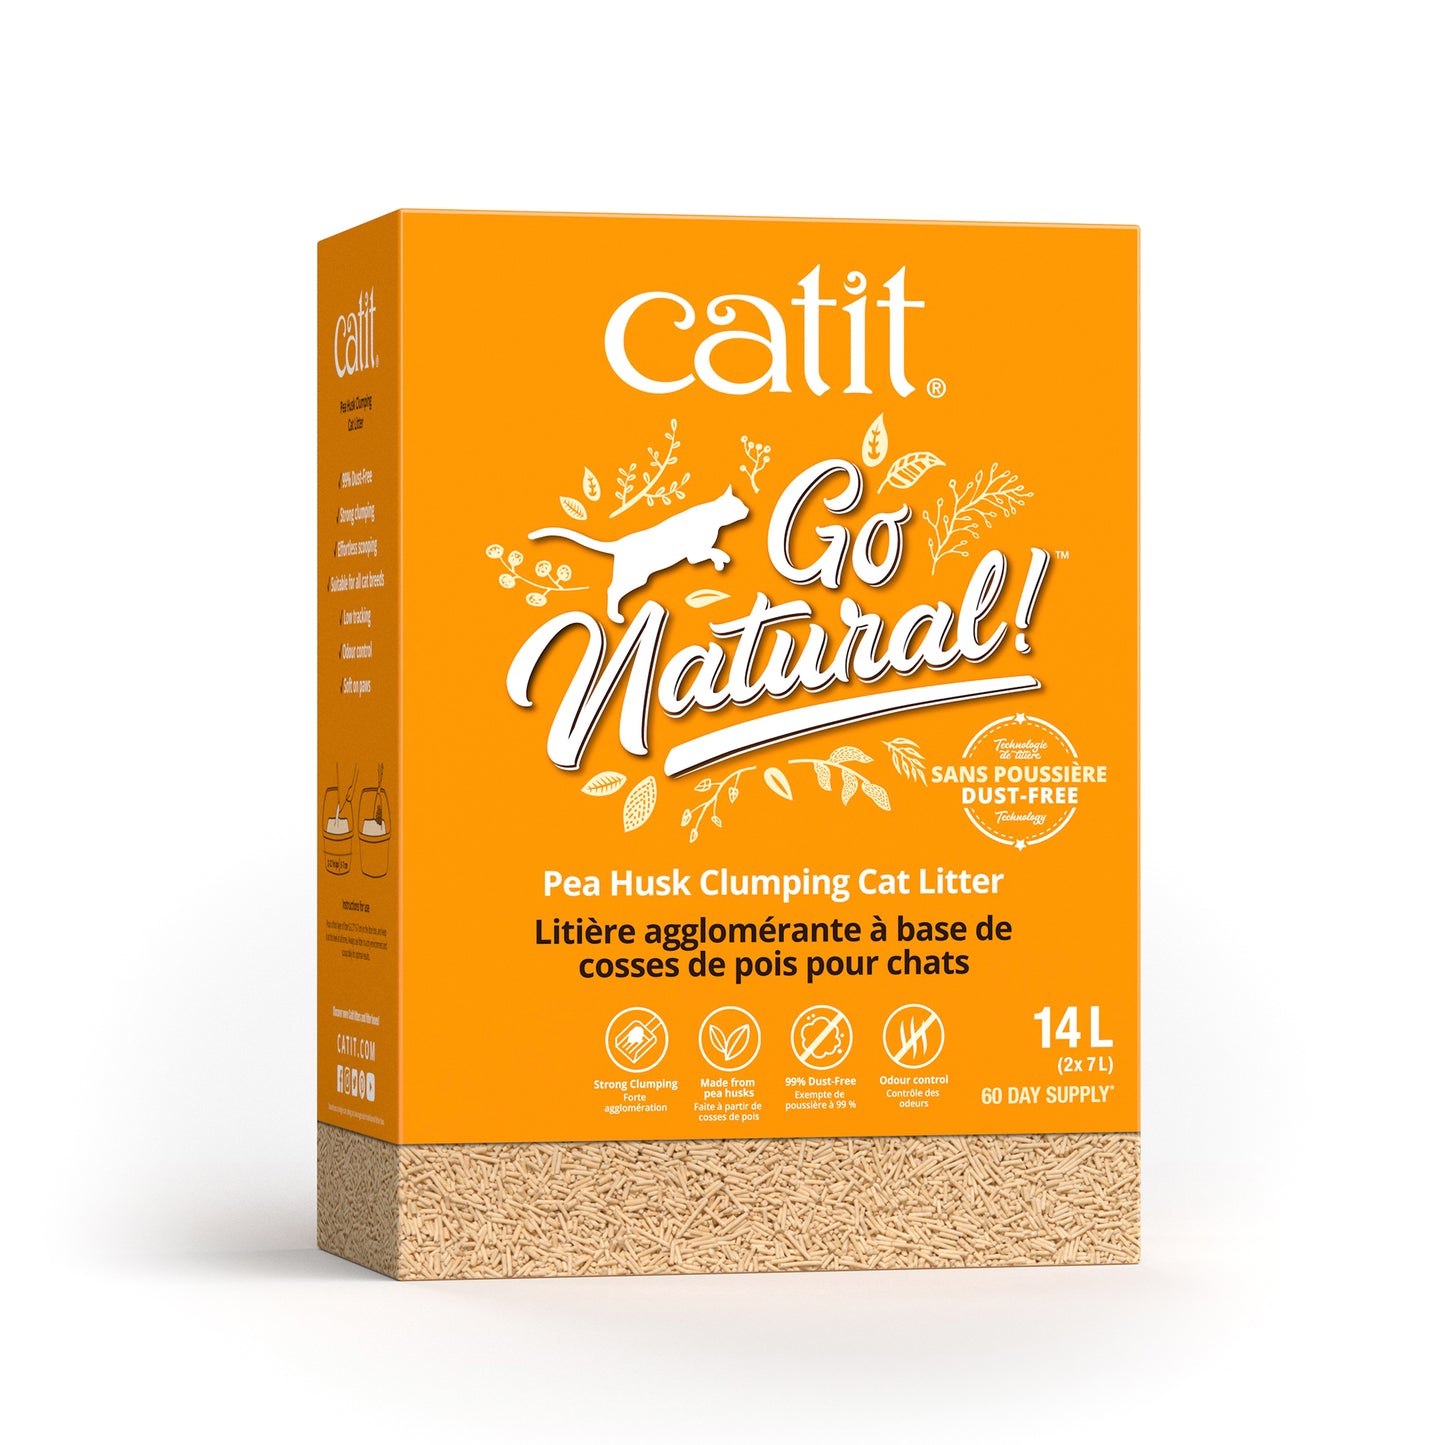 CATIT Go Natural! Pea Husk Clumping Cat Litter, Vanilla, 14 L box